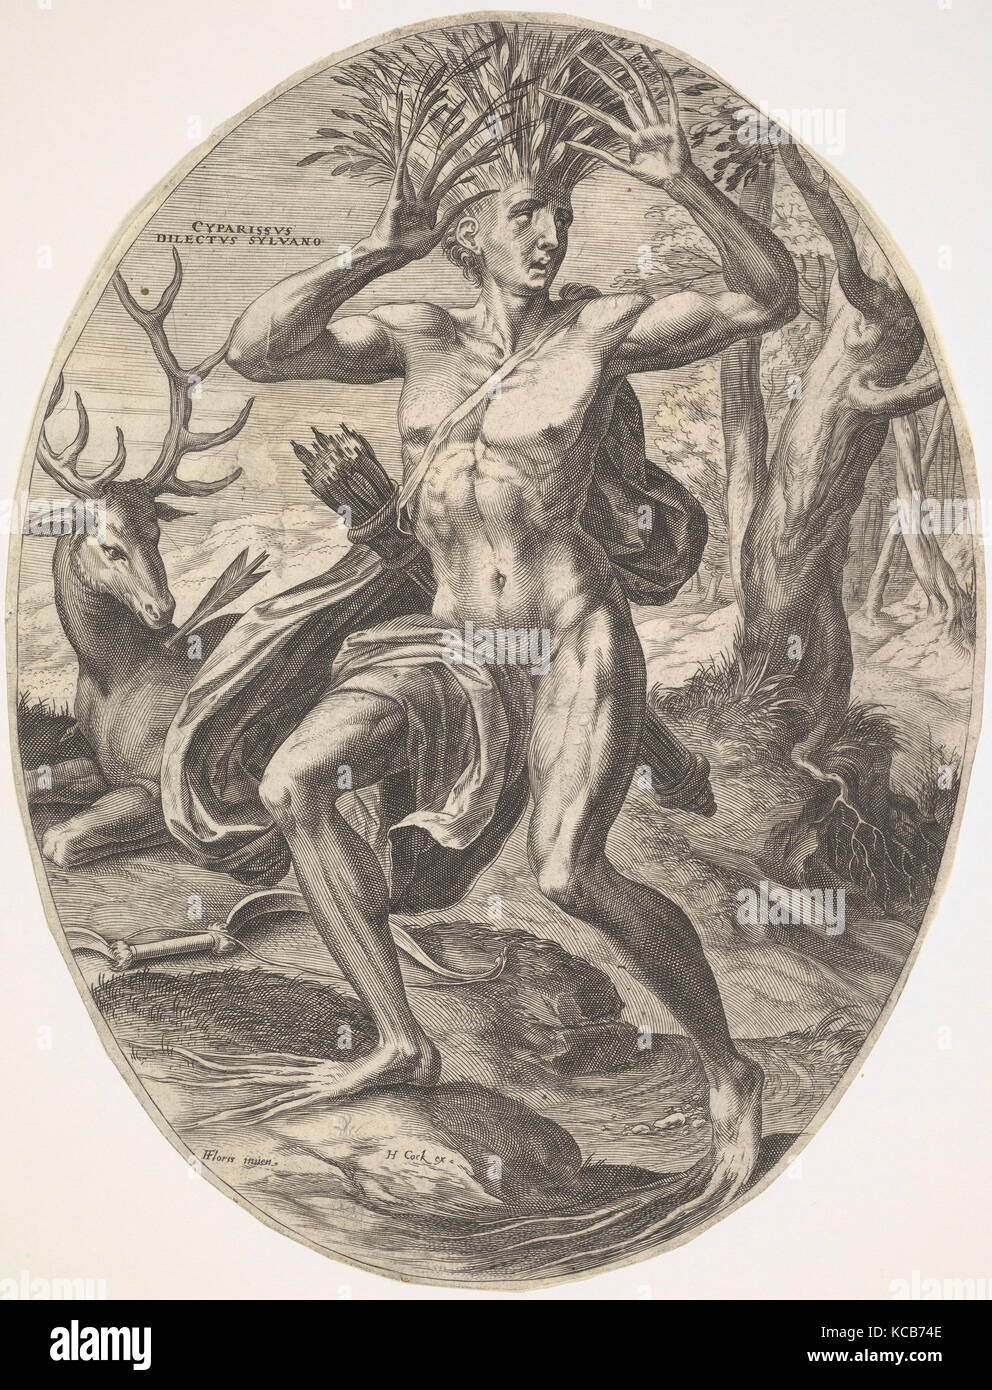 Cyparissus de définir les dieux Rural, Cornelis Cort, 1565 Banque D'Images